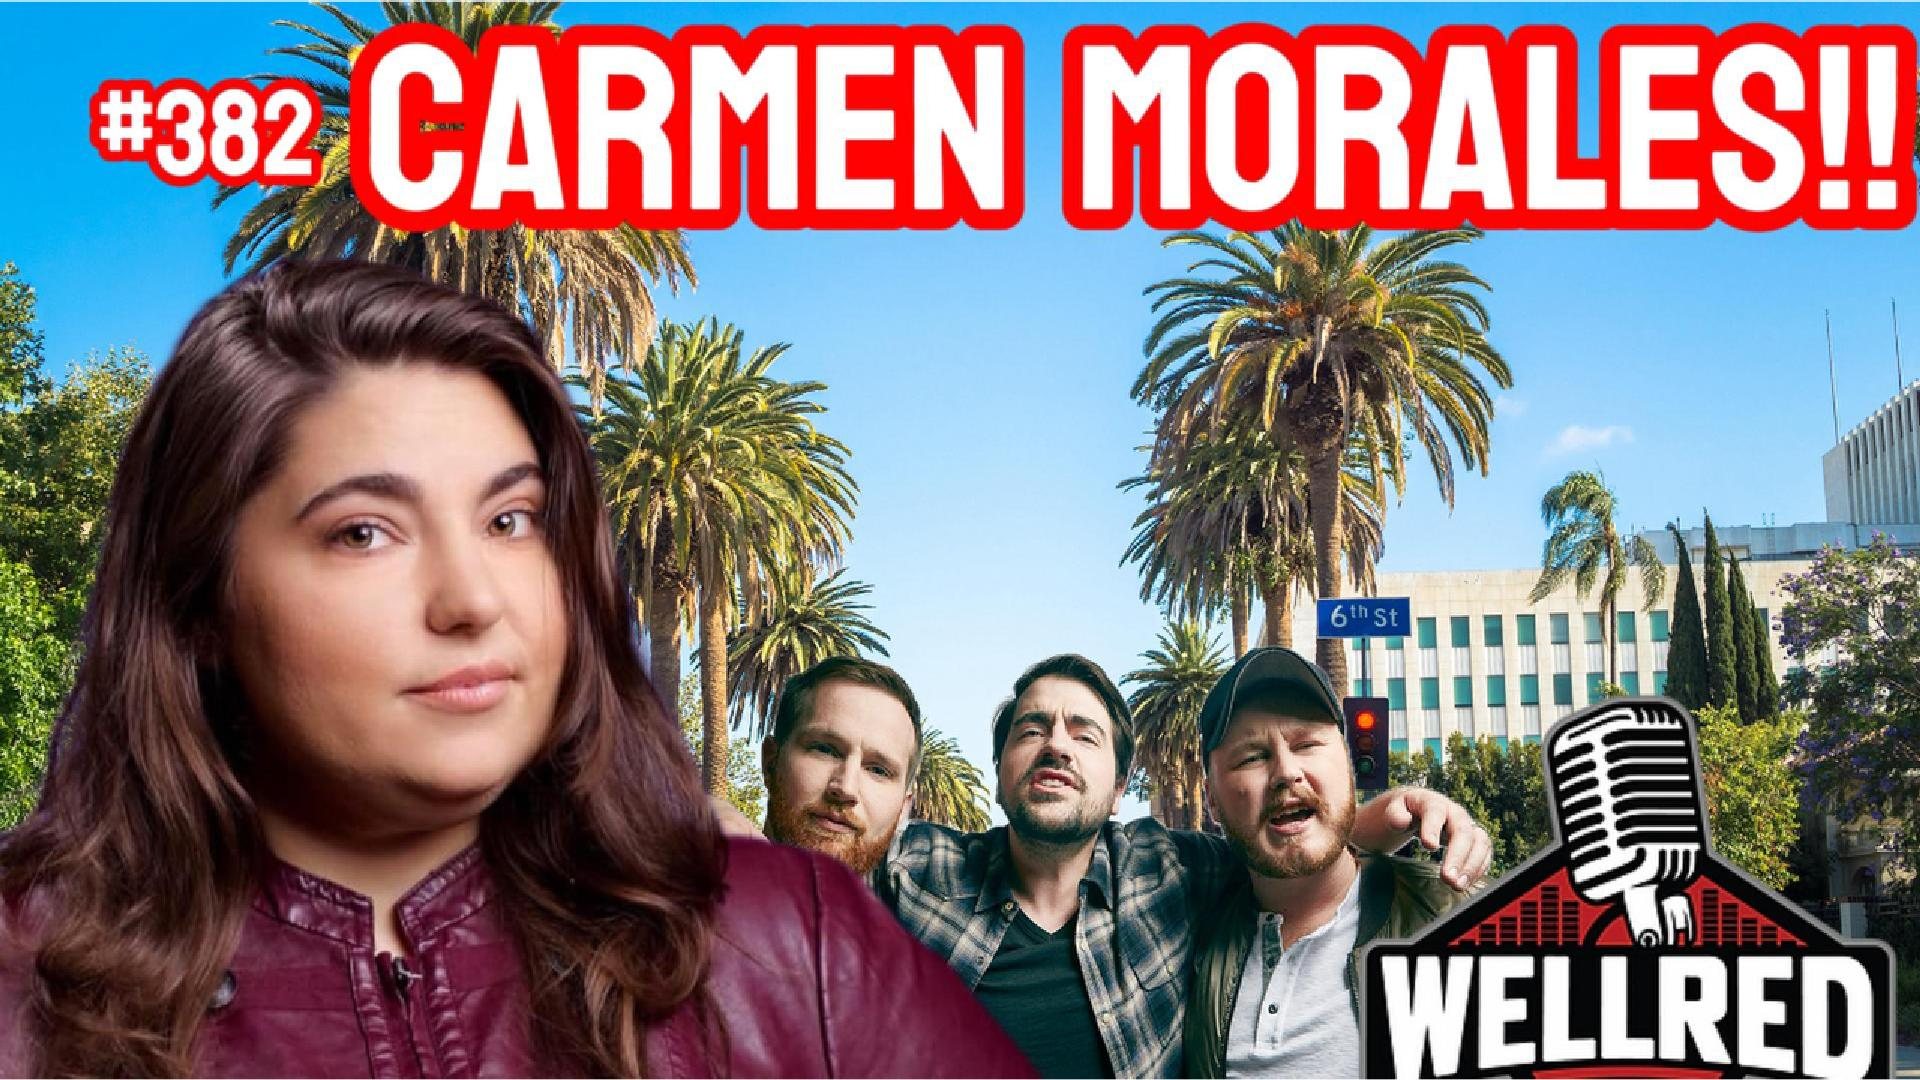 #382 - Carmen Morales is Back & Sydney Sweeney’s Boobs Killed Wokeness!